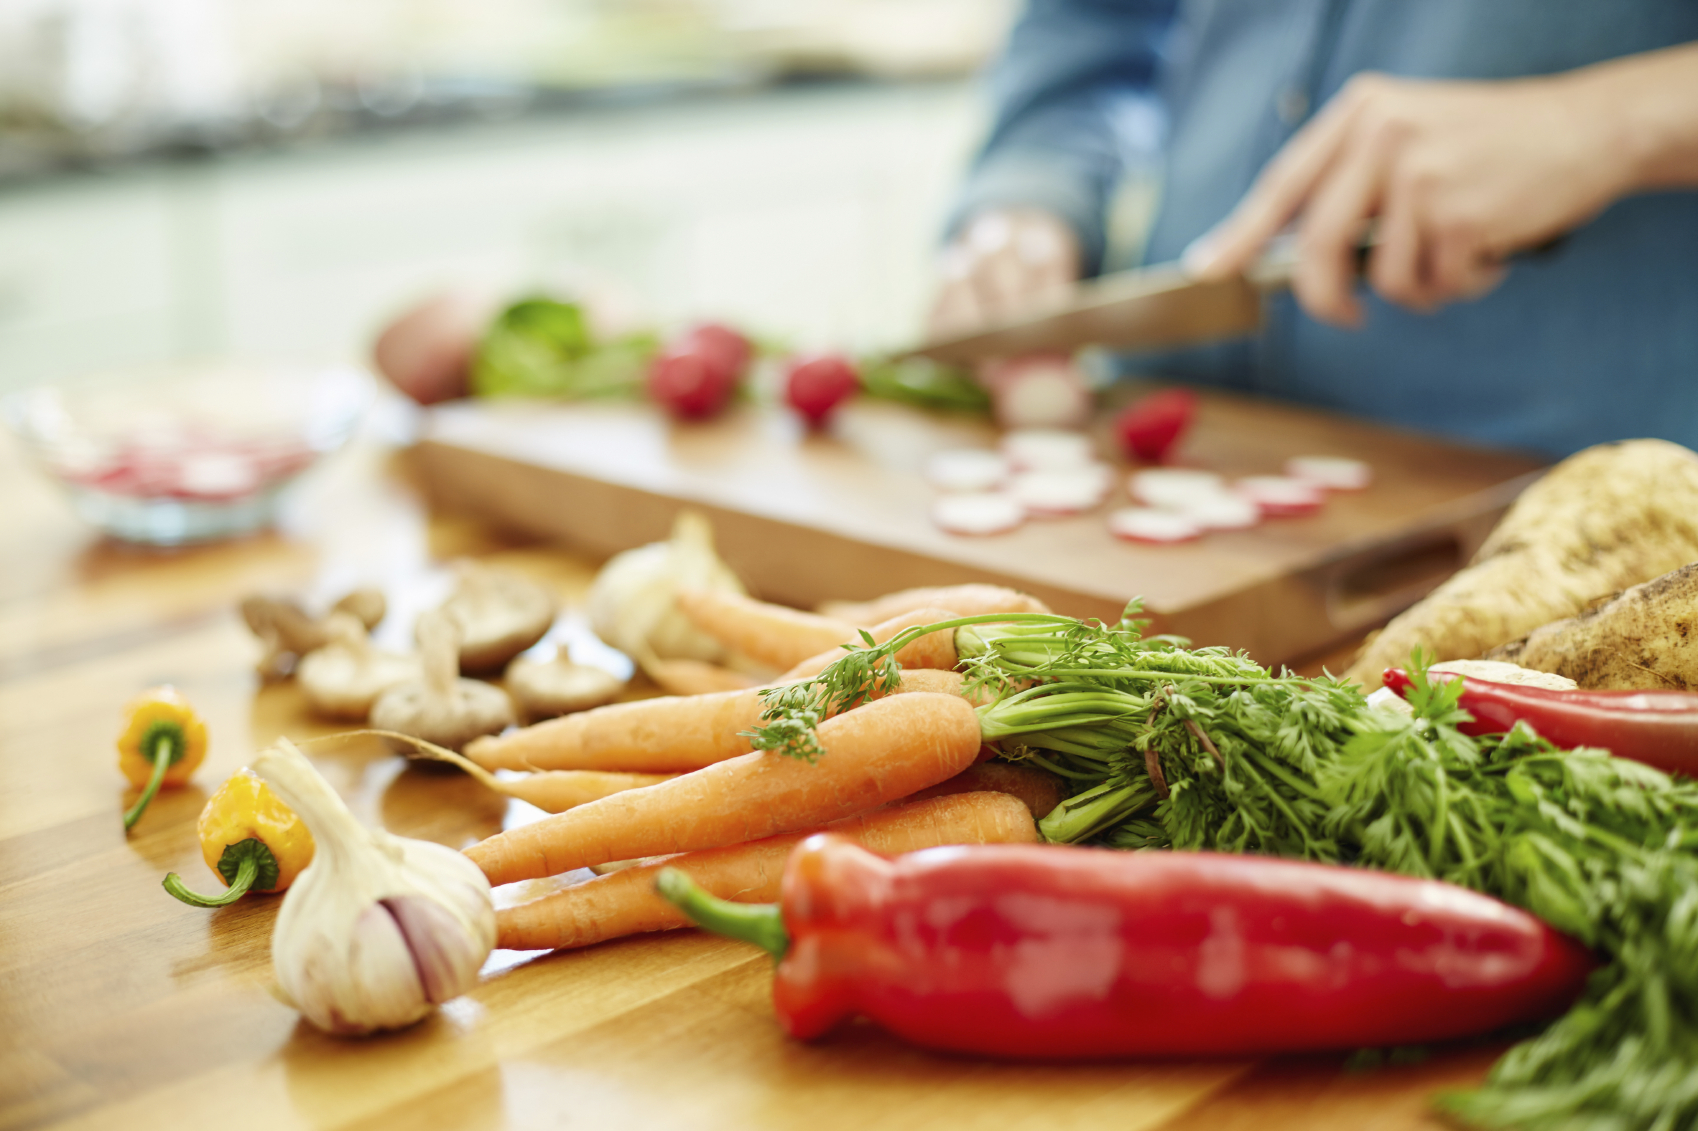 une alimentation saine, riche en fruits, en légumes, en poisson et en viande maigre, contribuerait fortement à réduire les symptômes dépressifs. © Neustockimages, Istock.com